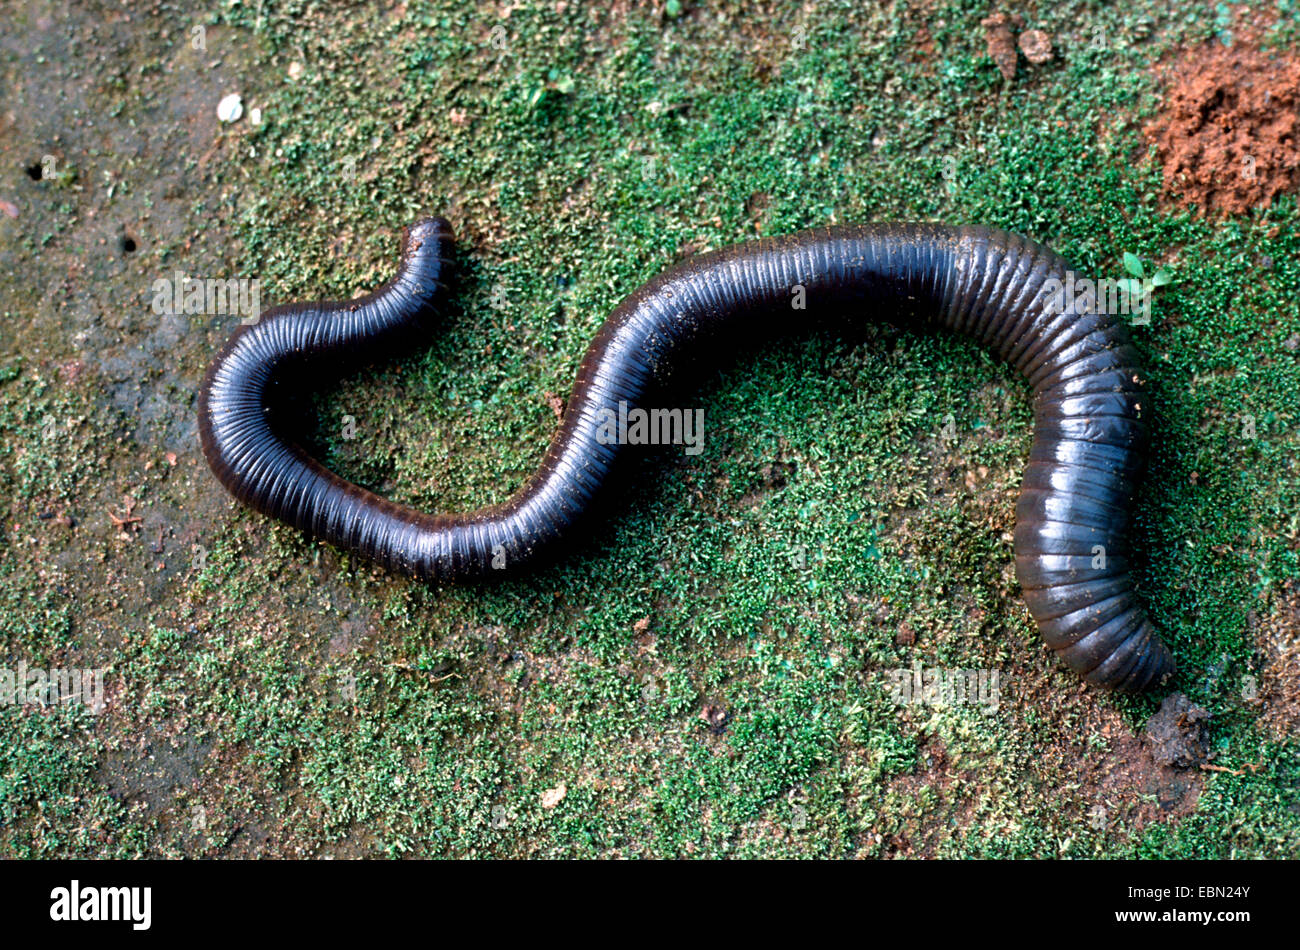 Giant Earthworms